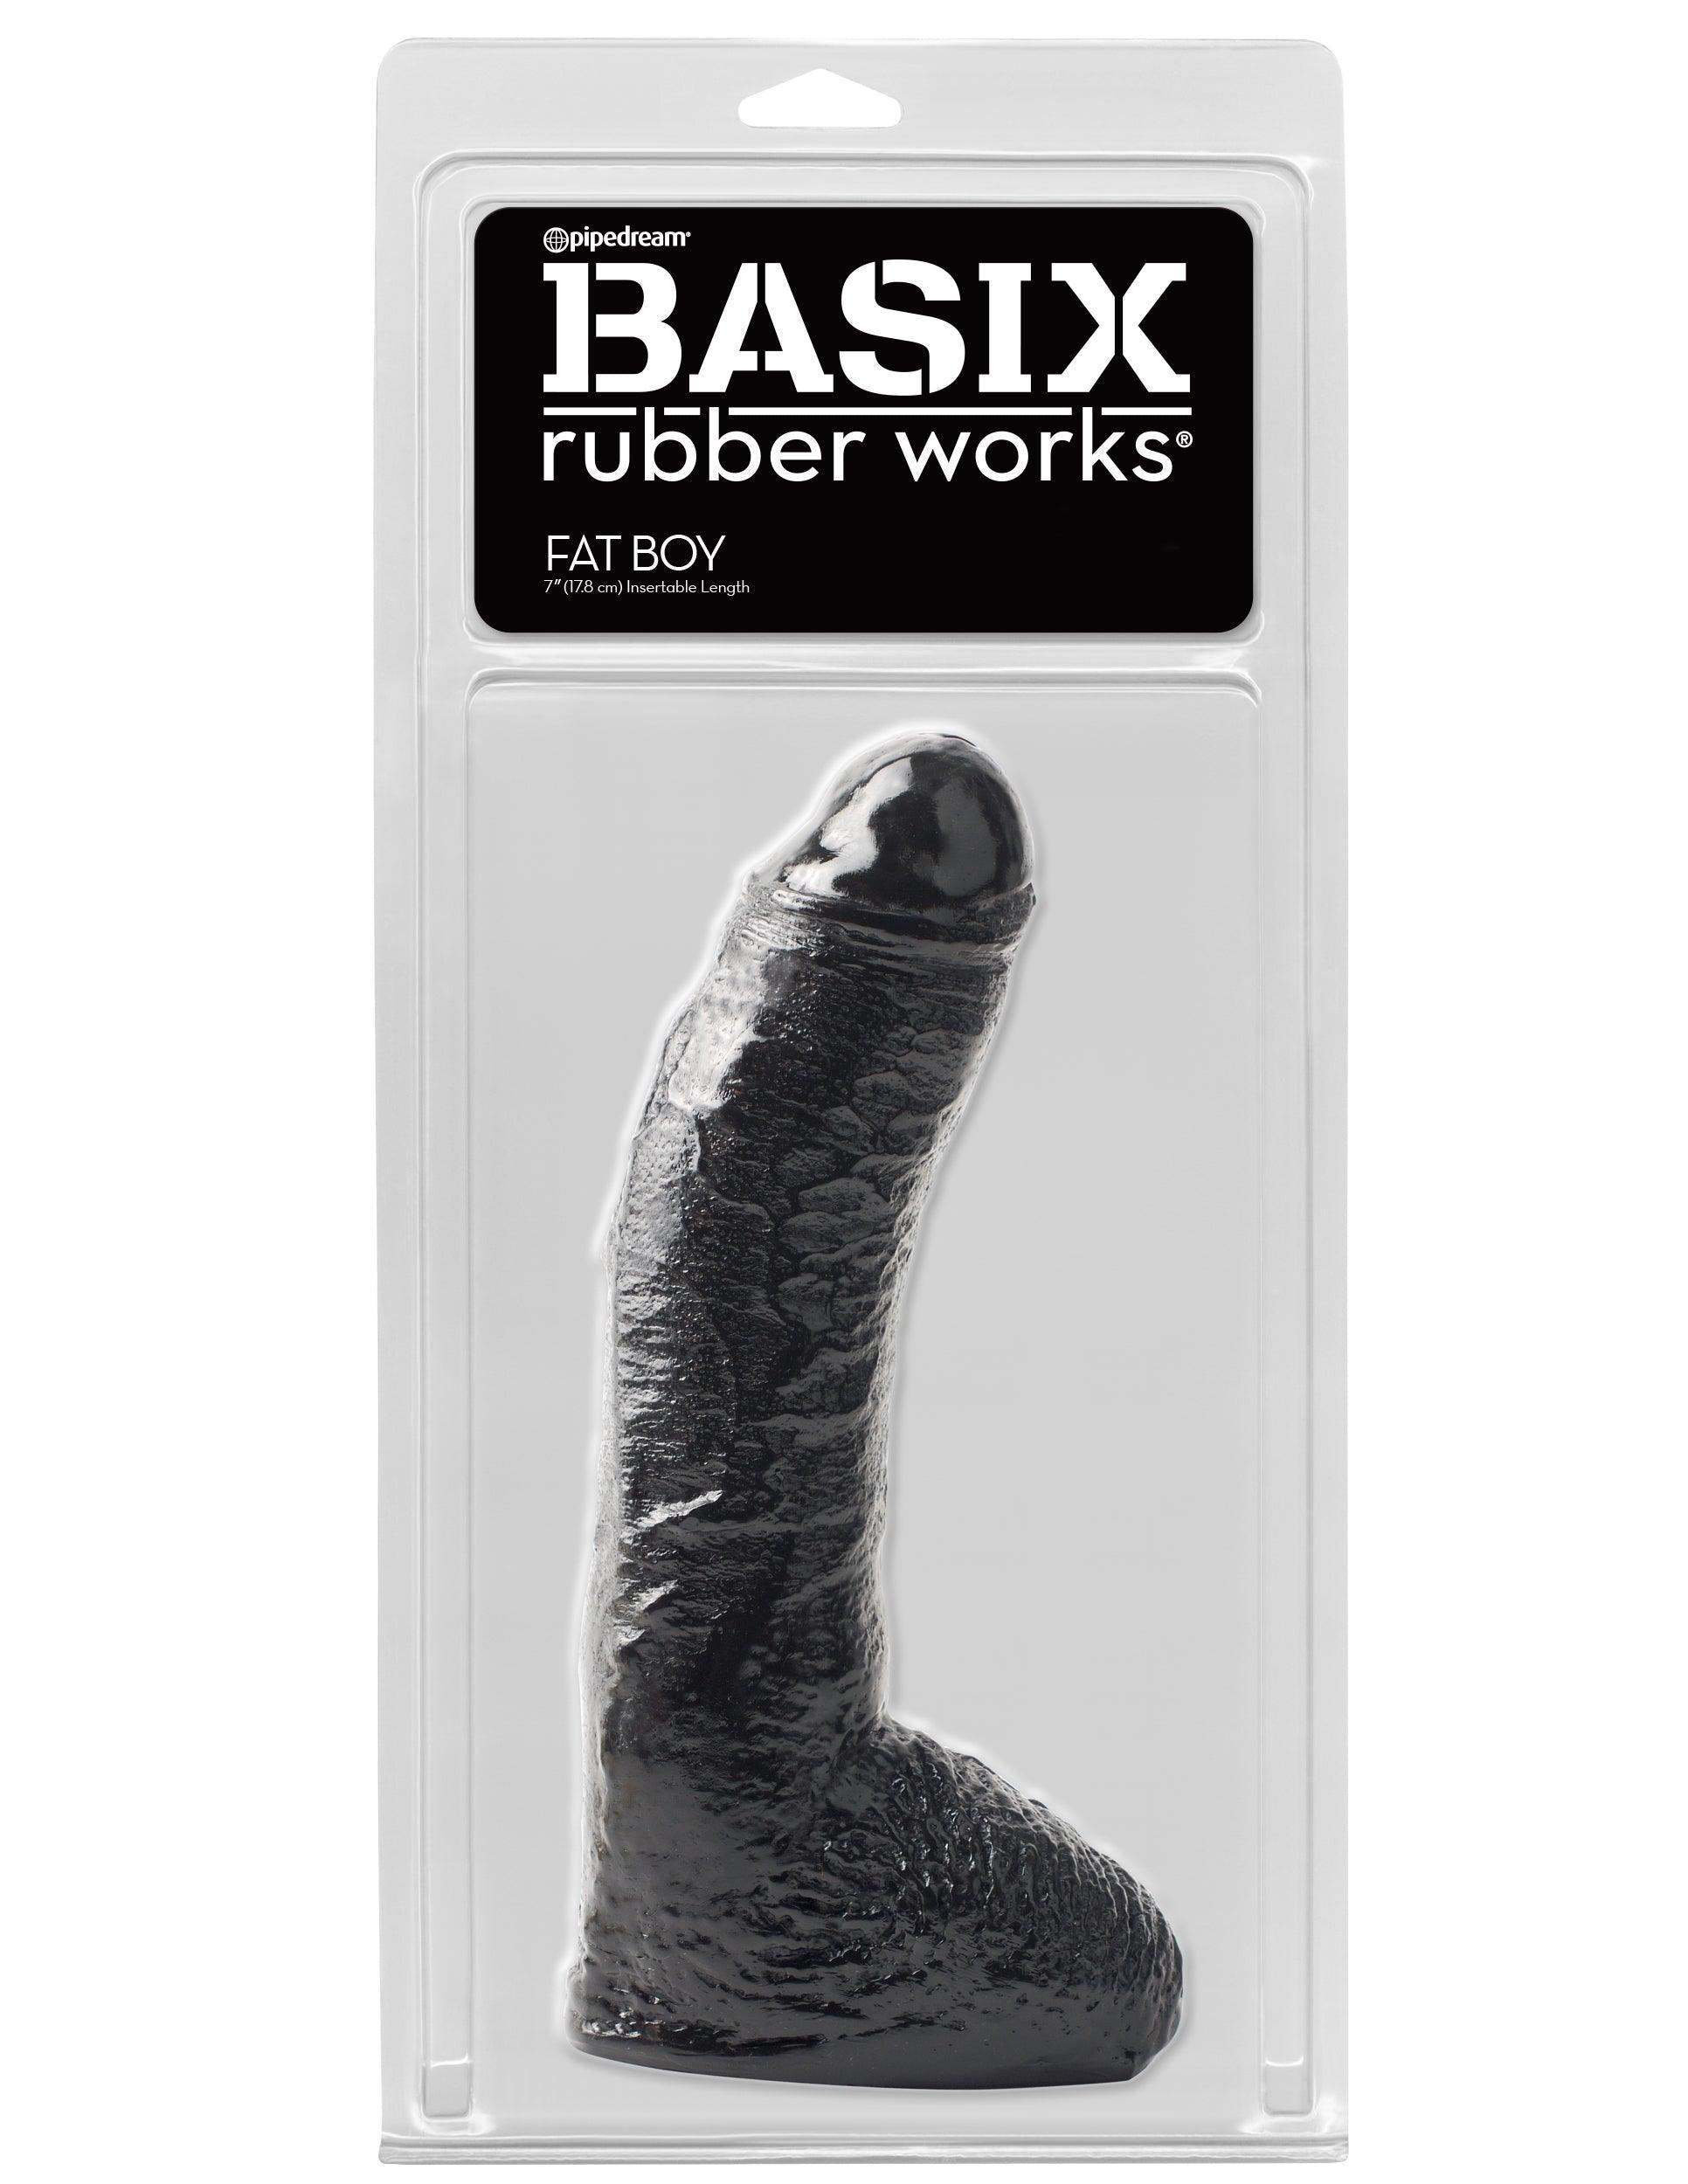 Basix Rubber Works - 10 Inch Fat Boy - Black - My Sex Toy Hub